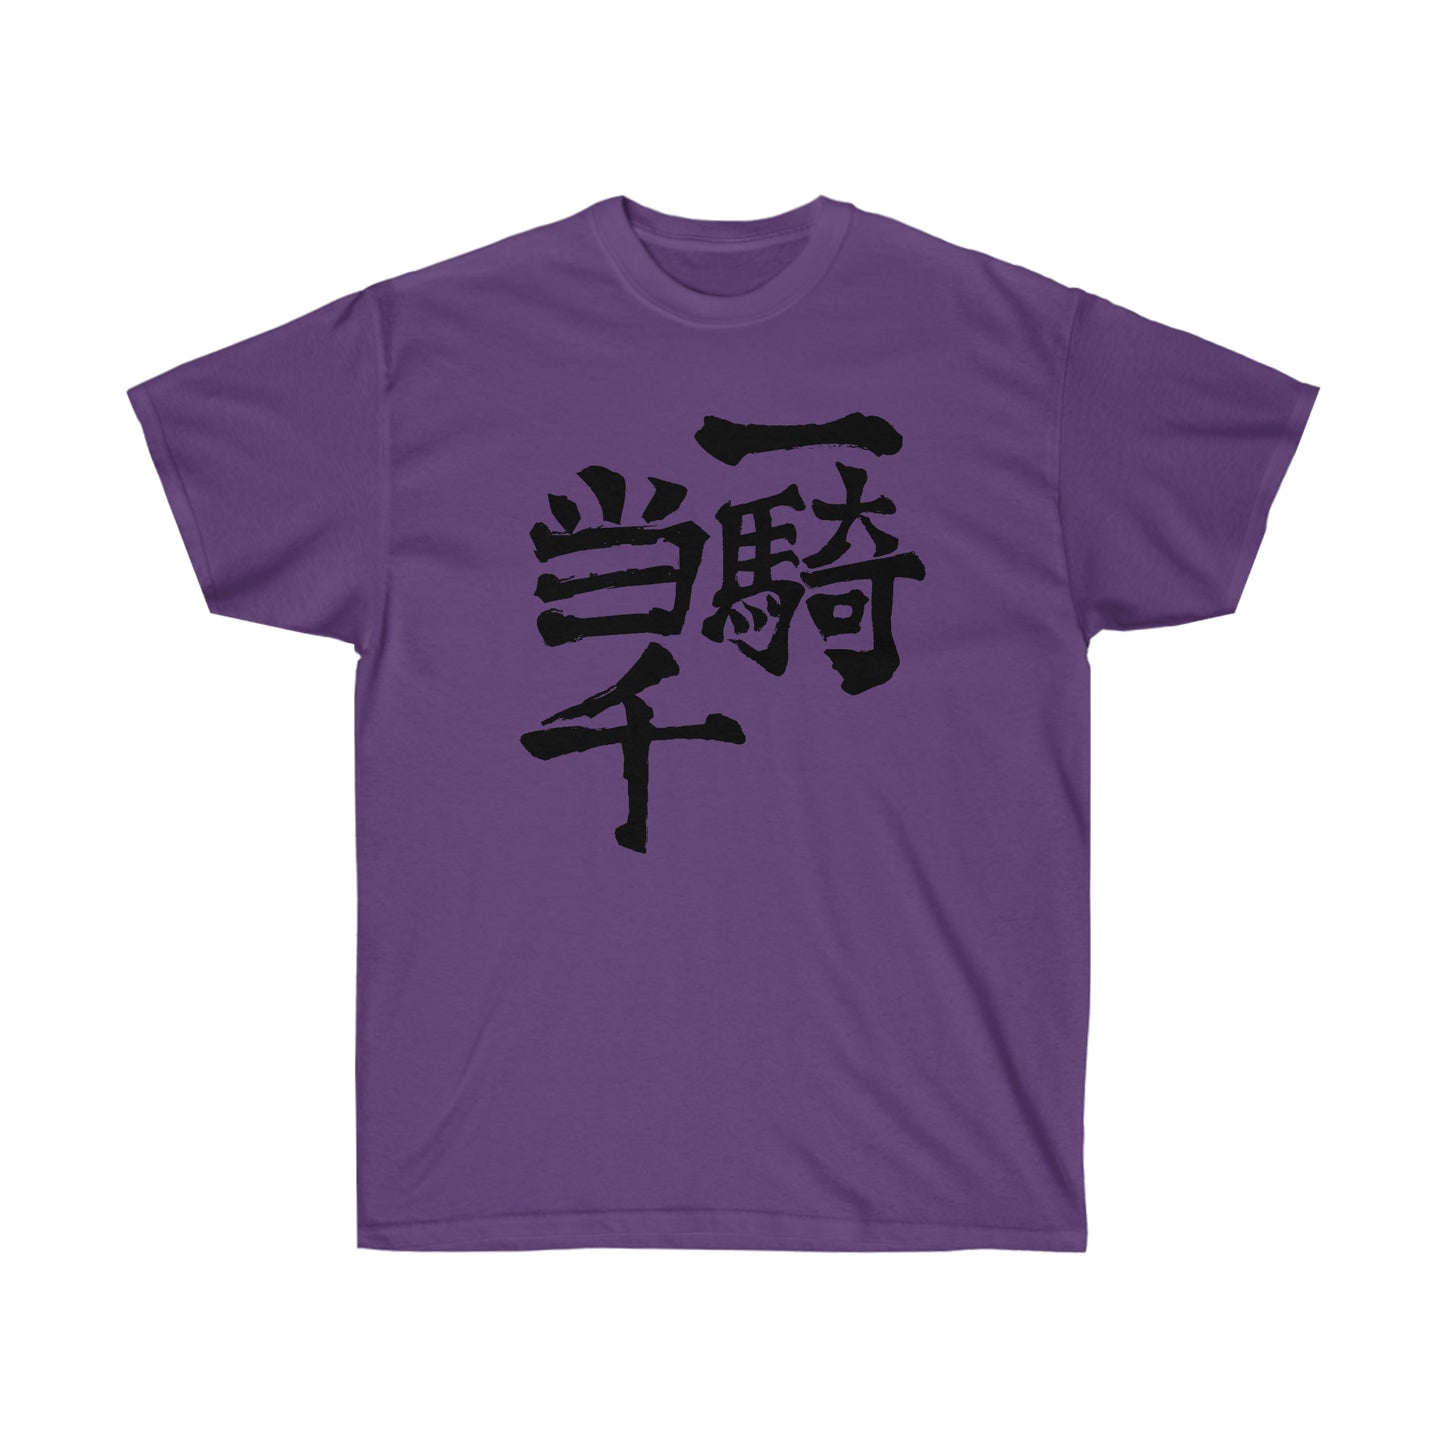 One Man Army Nishinoyas shirt Classic T-Shirt Gym tee